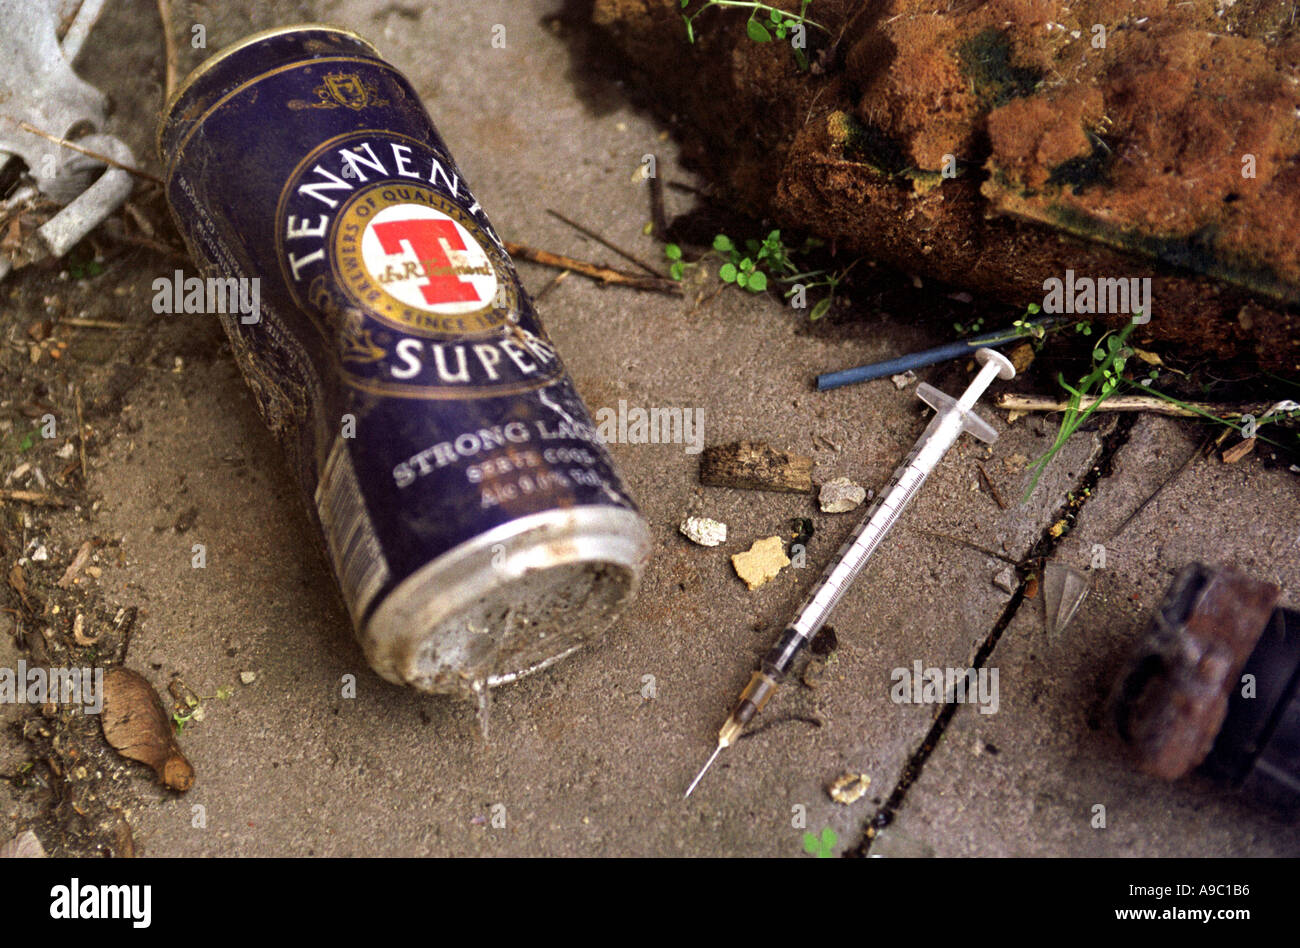 Nadeln benutzt, um illegale Drogen nach Gebrauch auf den Boden geworfen zu injizieren. Stockfoto